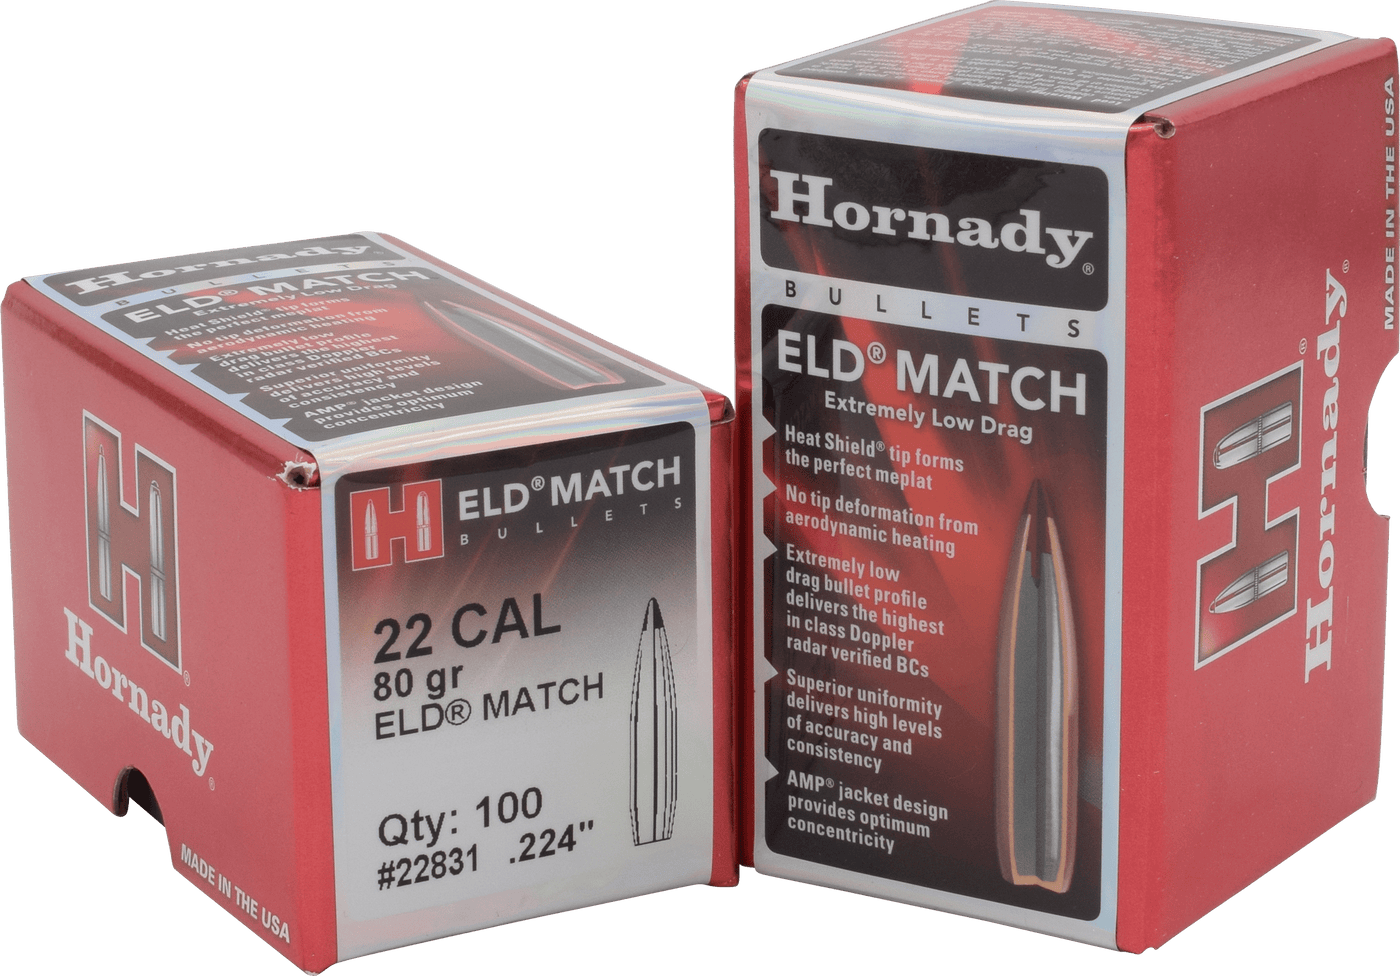 Hornady Hornady Eld Match Bullets 22 Cal. .224 80 Gr. Eld Match 100 Box Reloading